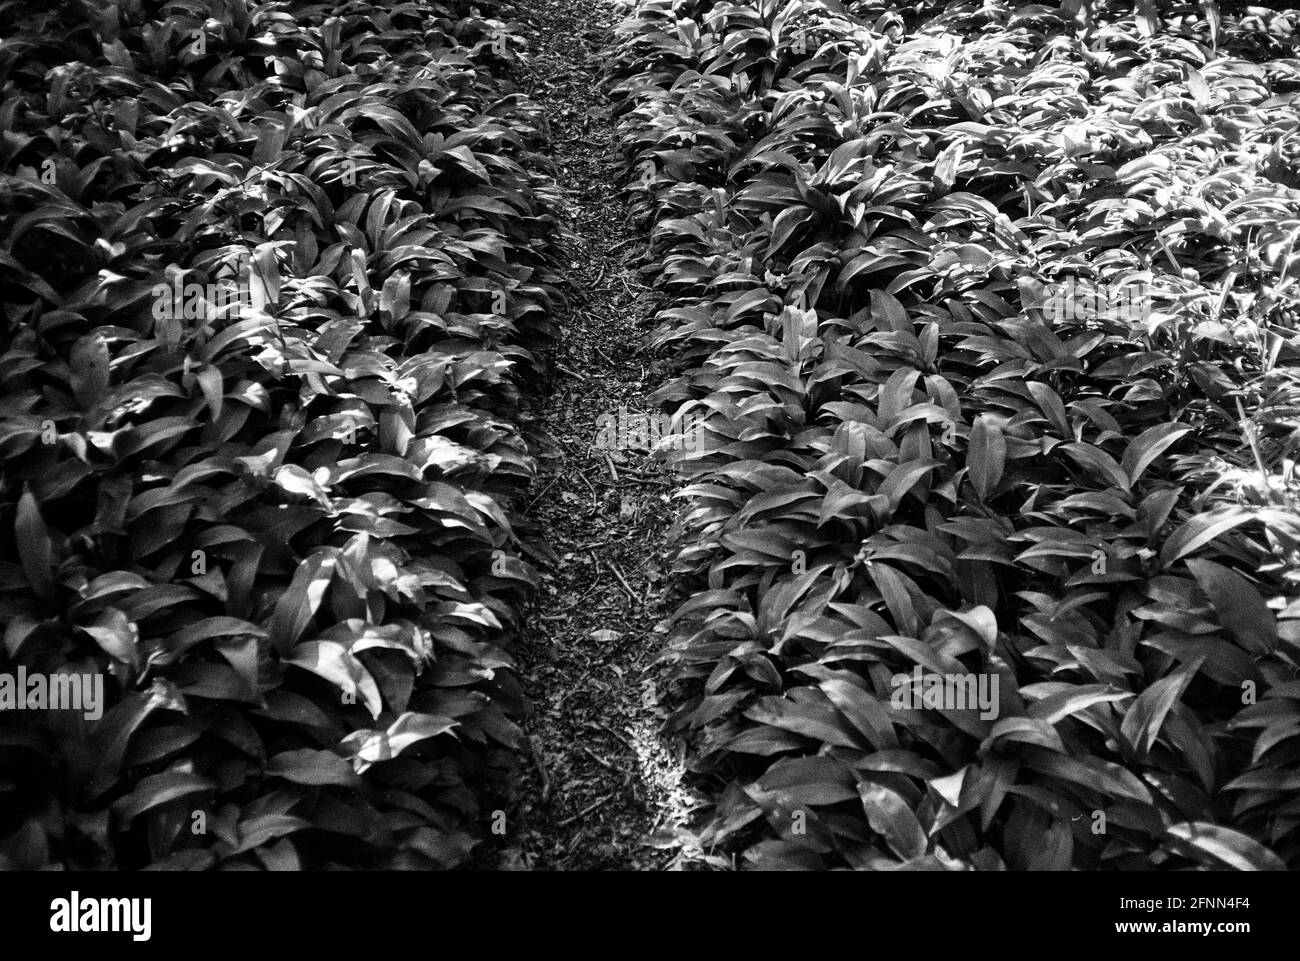 Bärlauch-Pflanzen, Medstead, Hampshire, England, Vereinigtes Königreich. Stockfoto